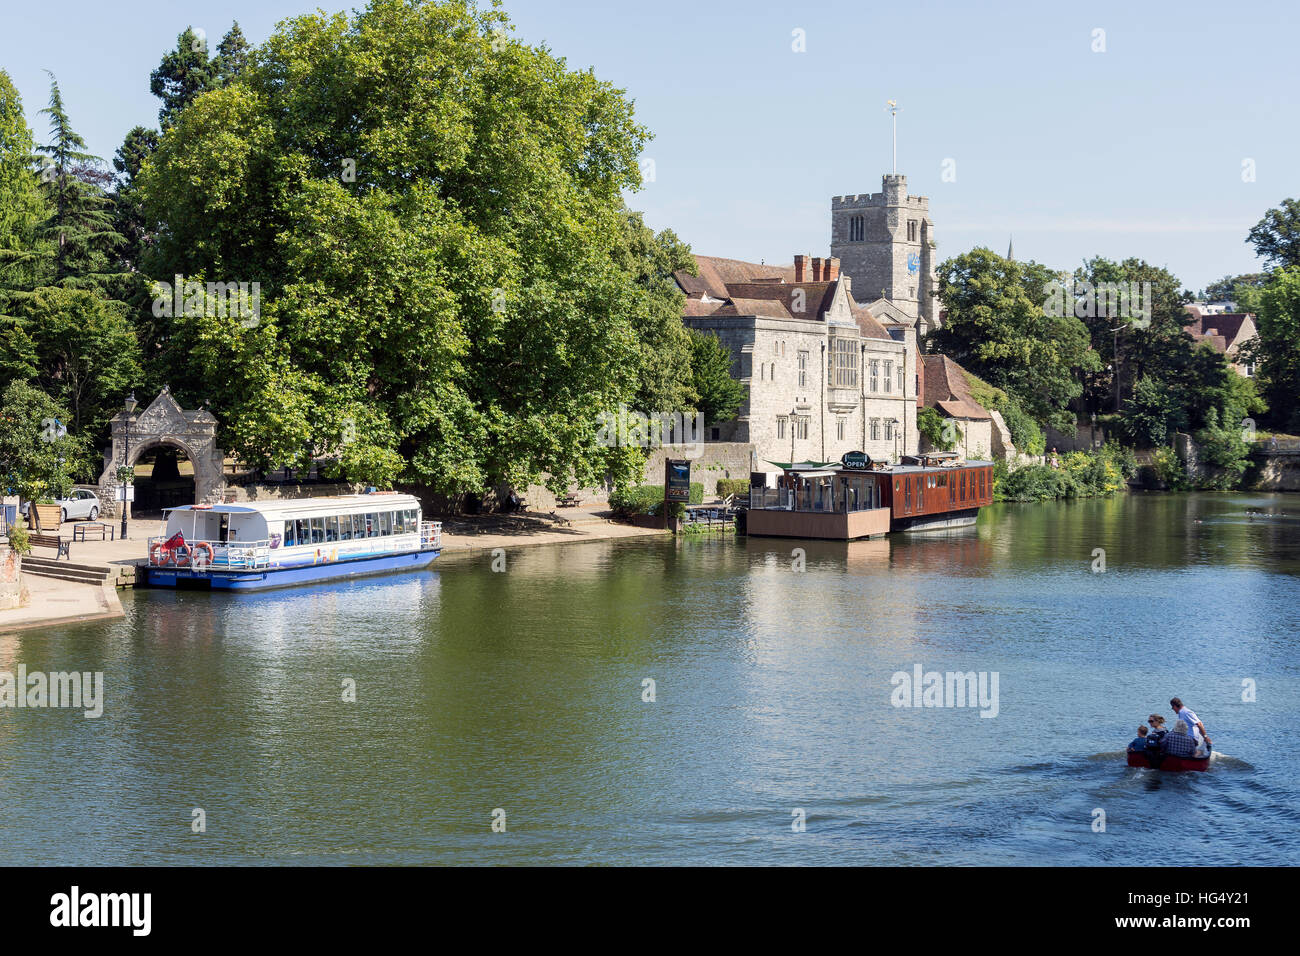 Riverside montrant le Palais de l'archevêque, rivière Medway, Maidstone, Kent, Angleterre, Royaume-Uni Banque D'Images